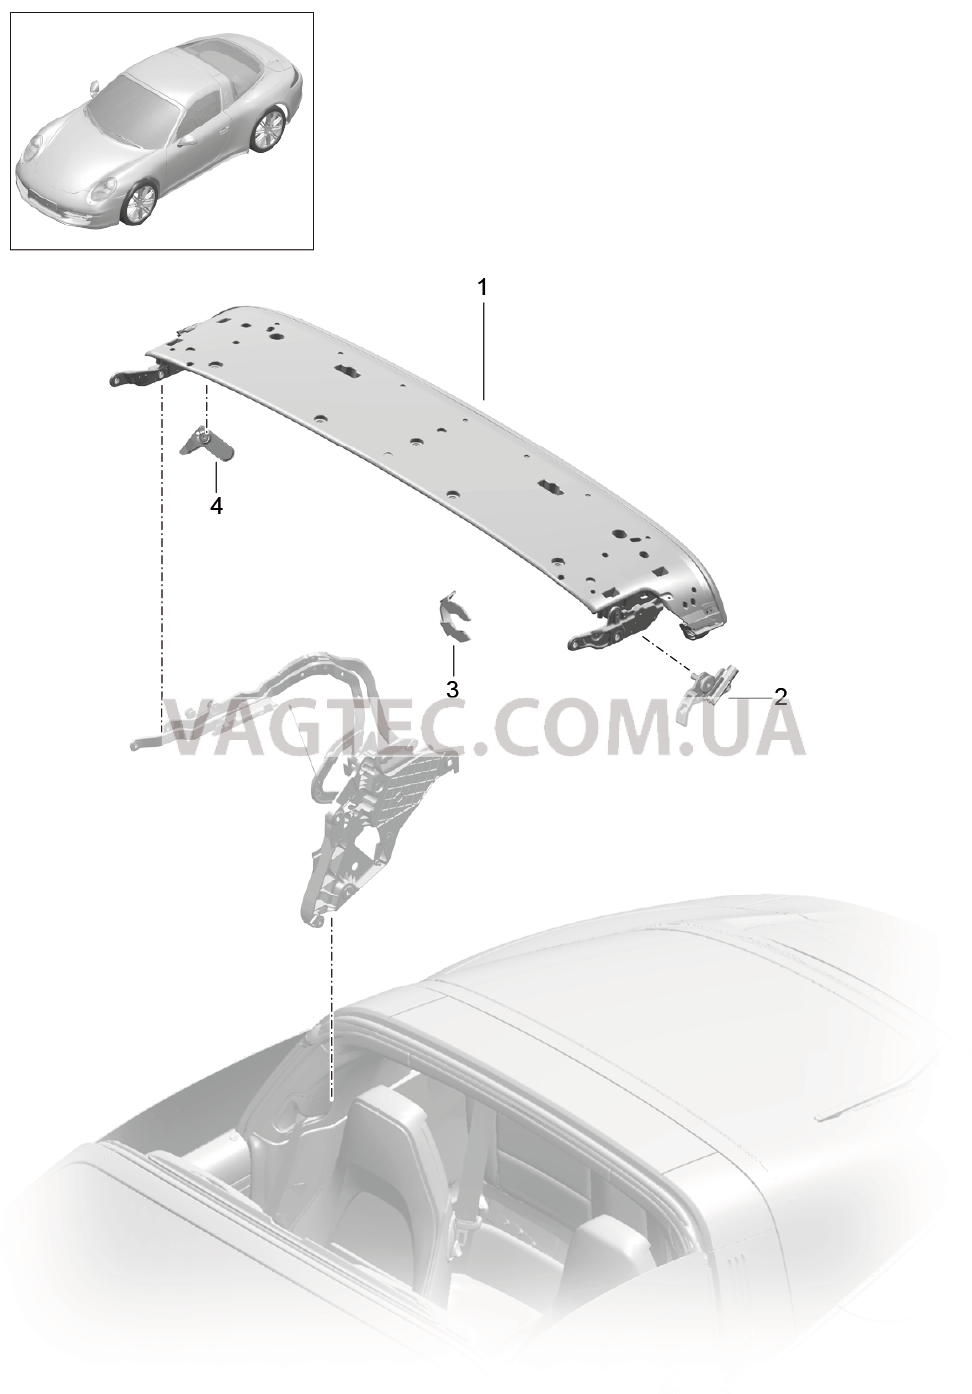 811-022 Каркас складного верха, Отдельные детали, Дуга, Блокировка, боковой
						
						TARGA для PORSCHE 911.Carrera 2017-2018USA